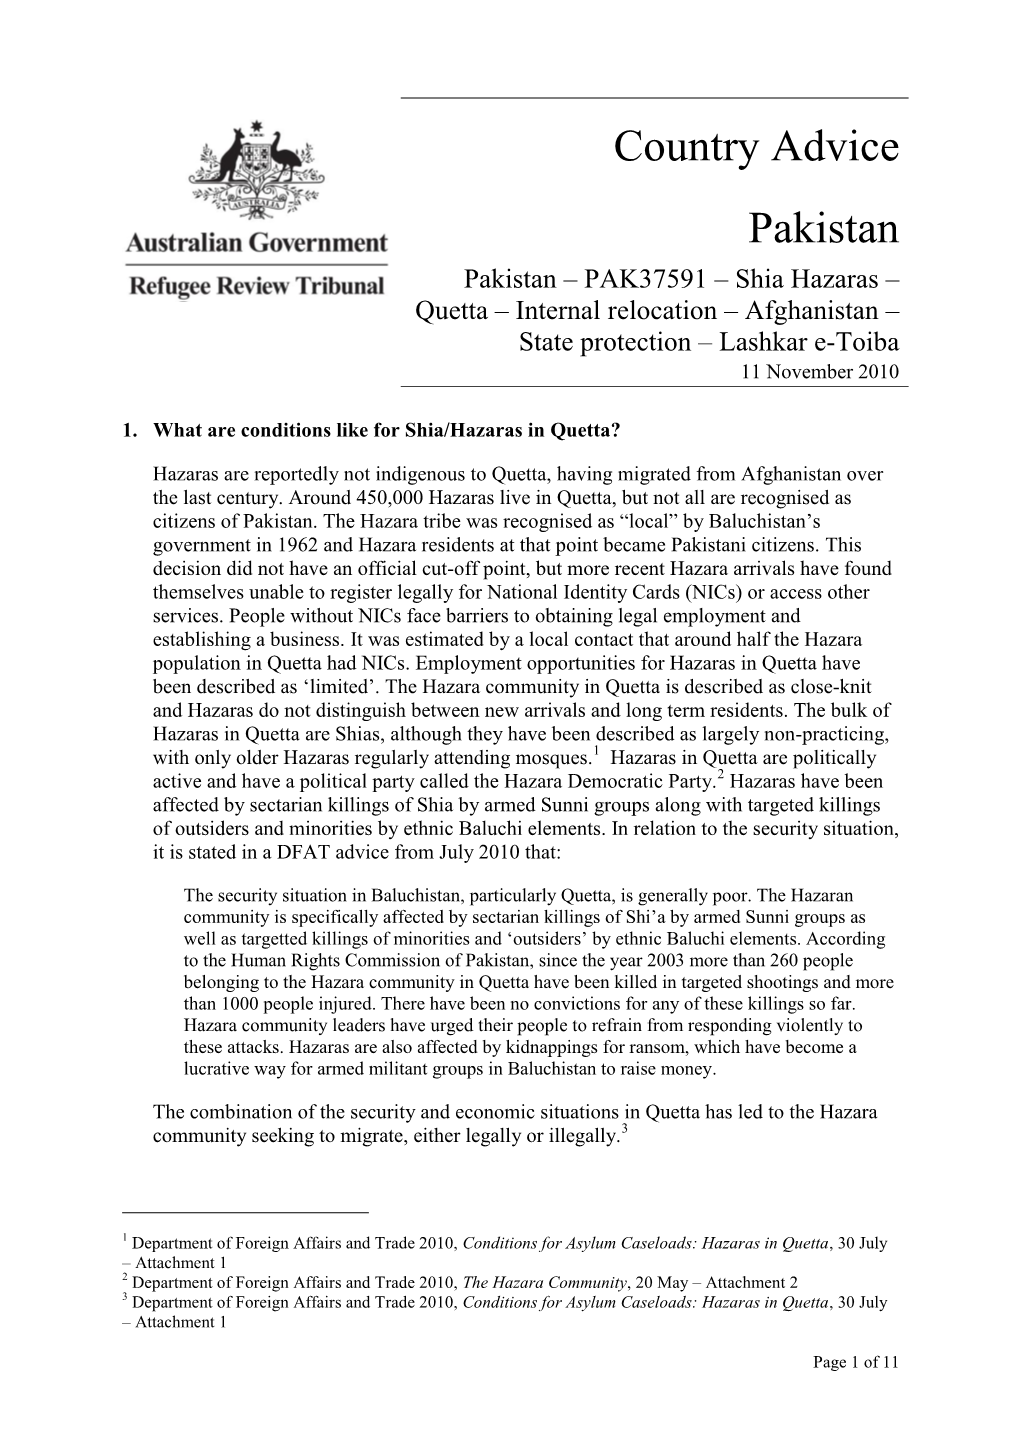 Country Advice Pakistan Pakistan – PAK37591 – Shia Hazaras –